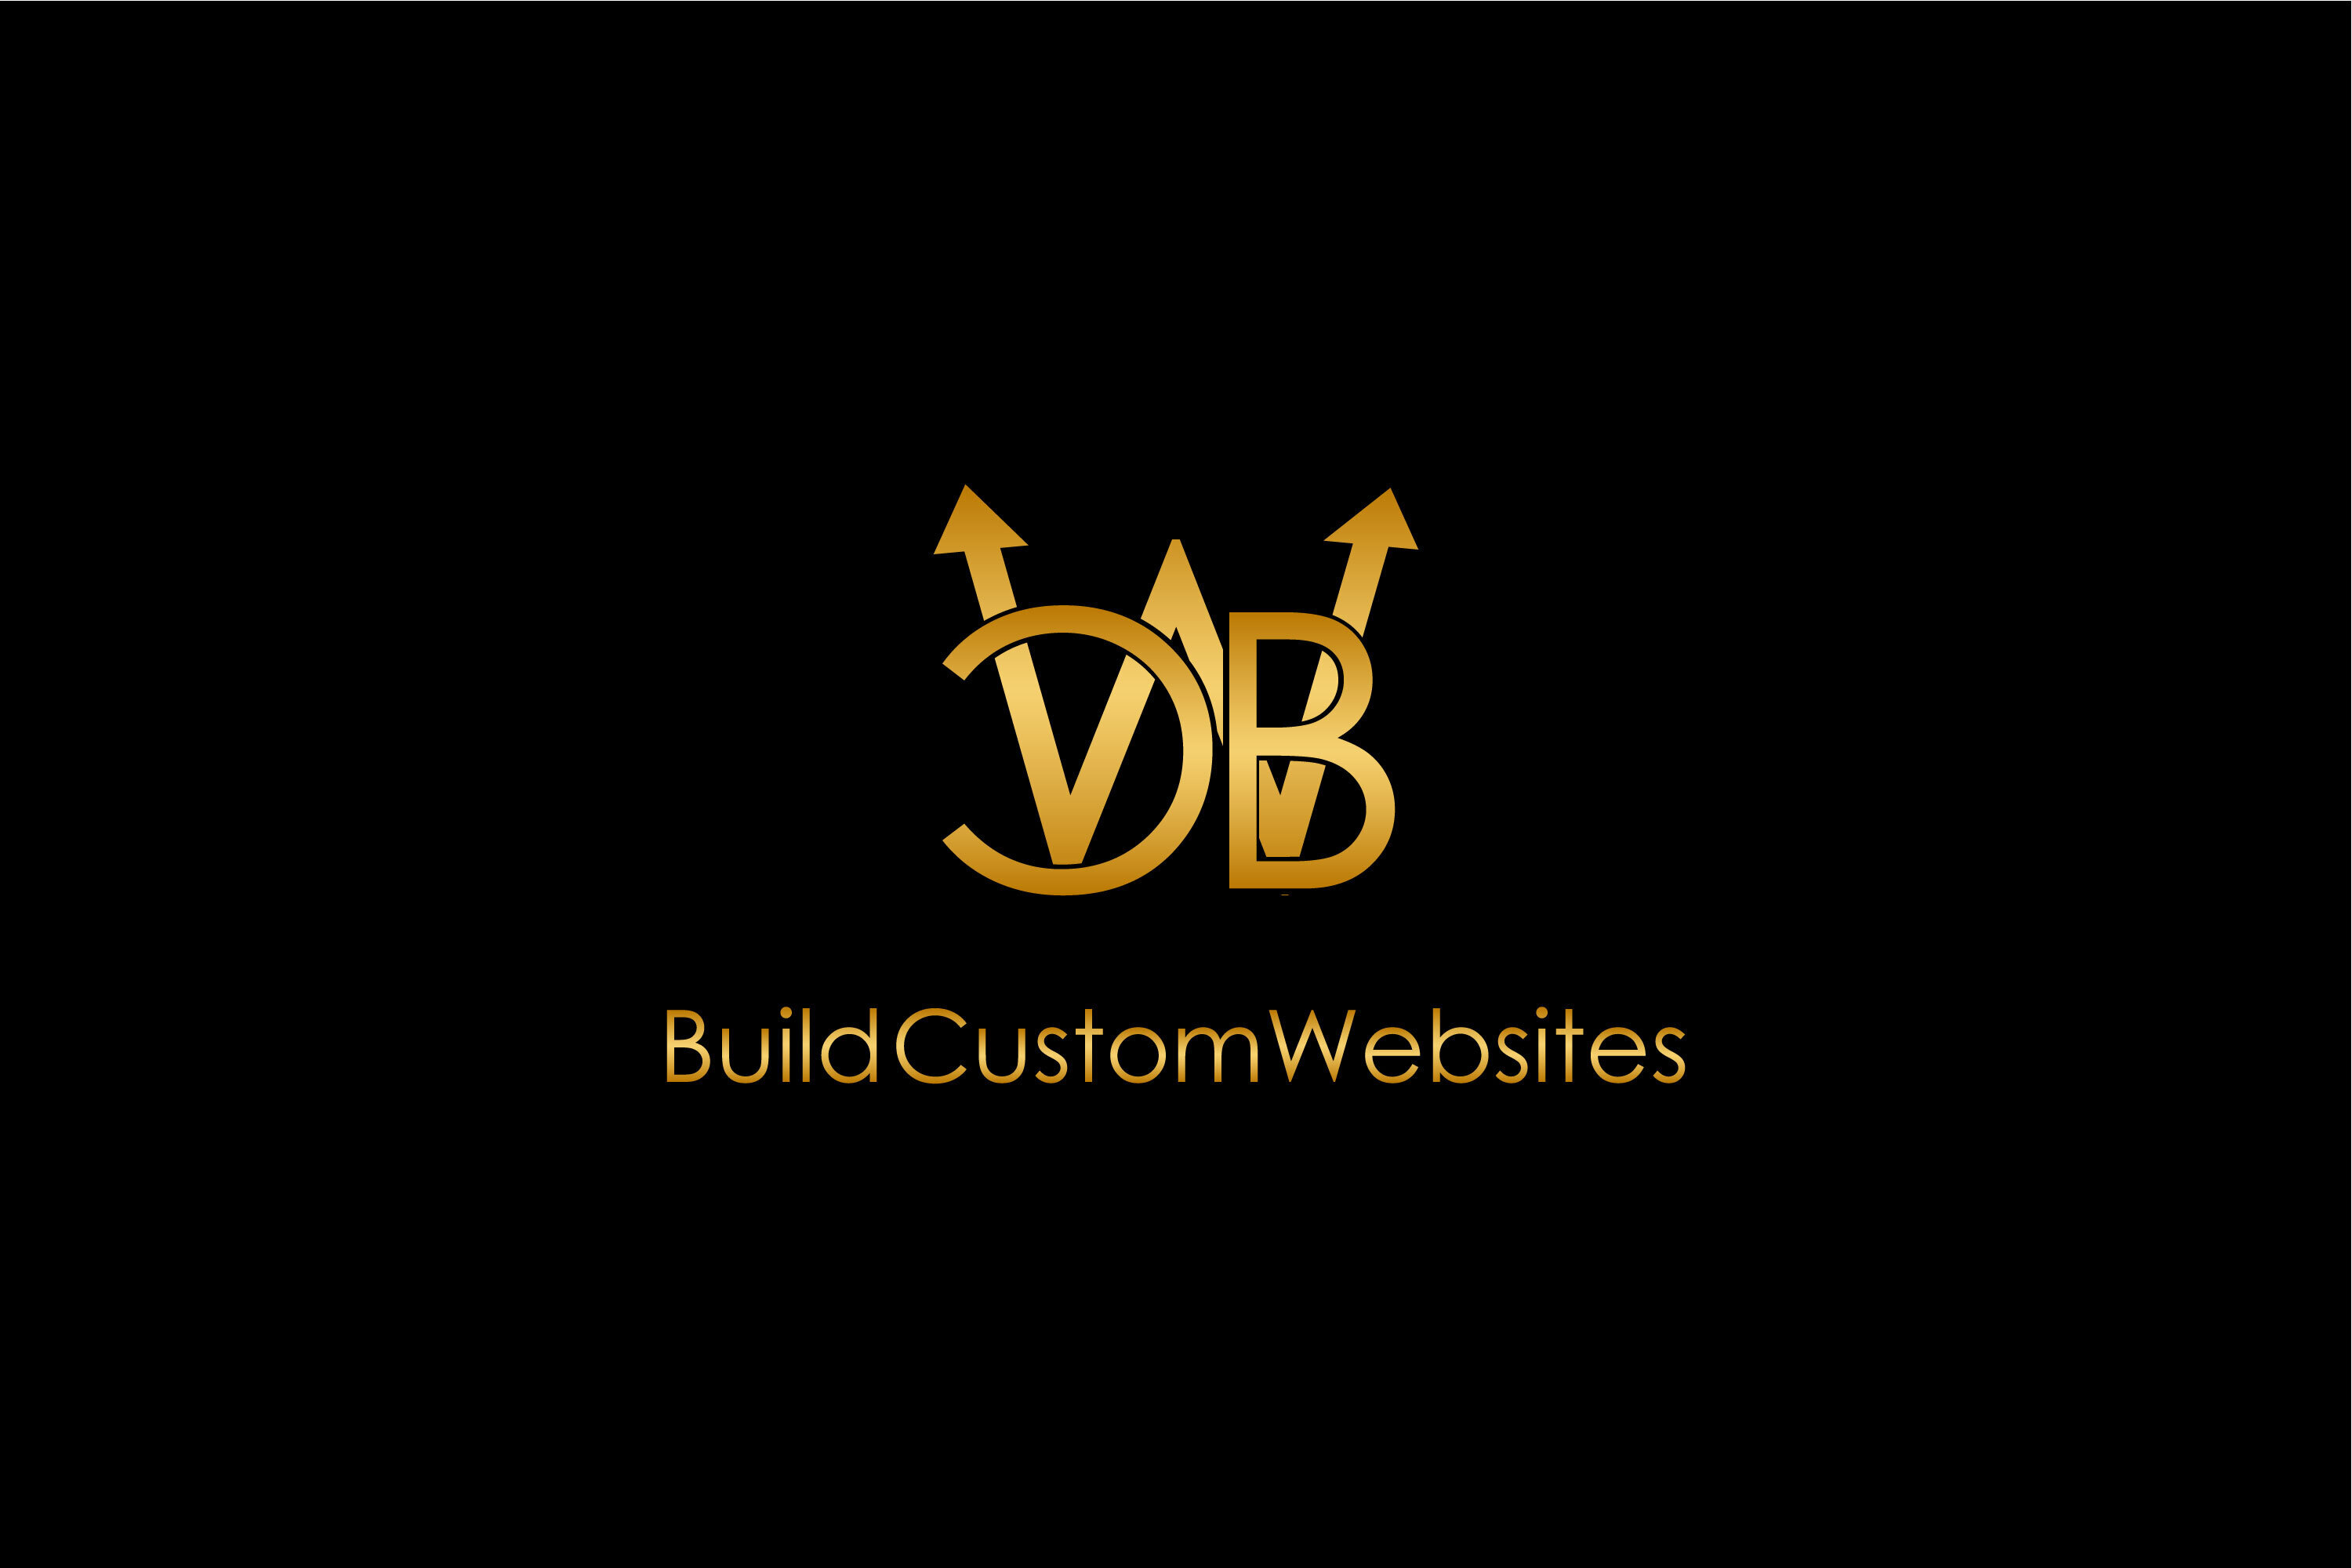 BuildCustomWebsites.com